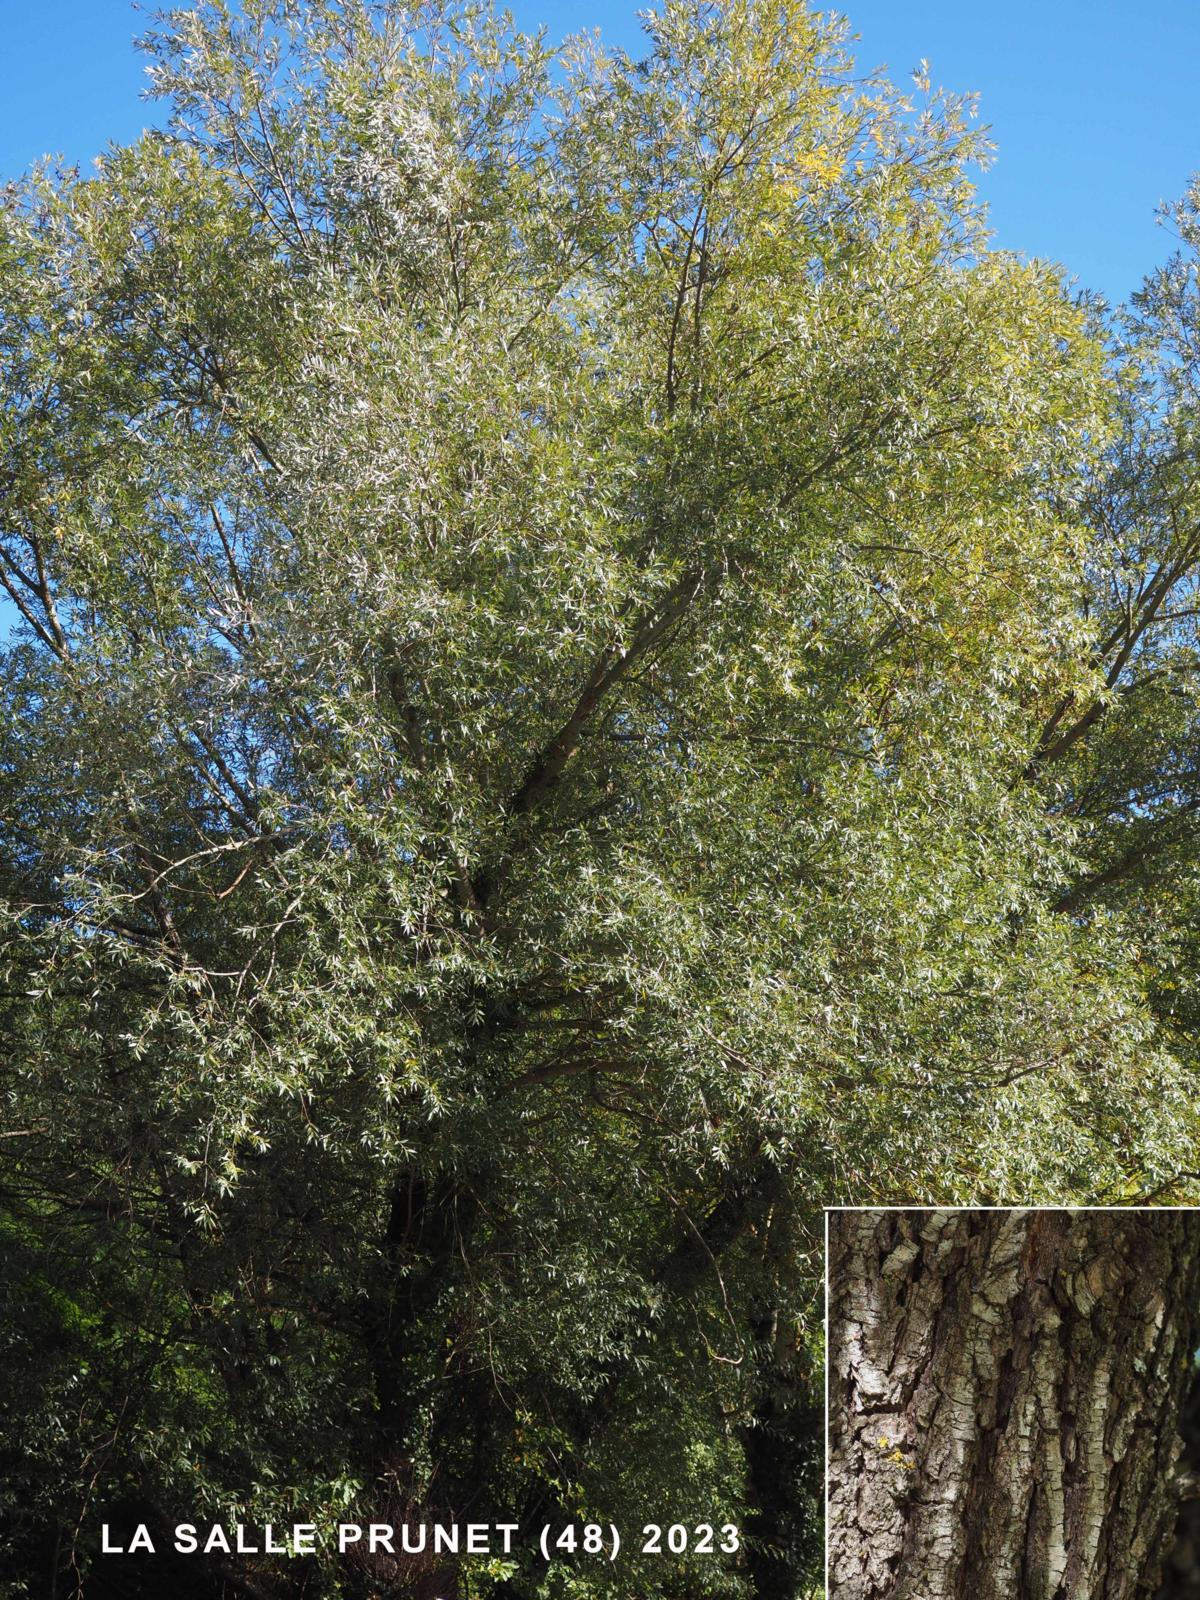 Willow, White plant